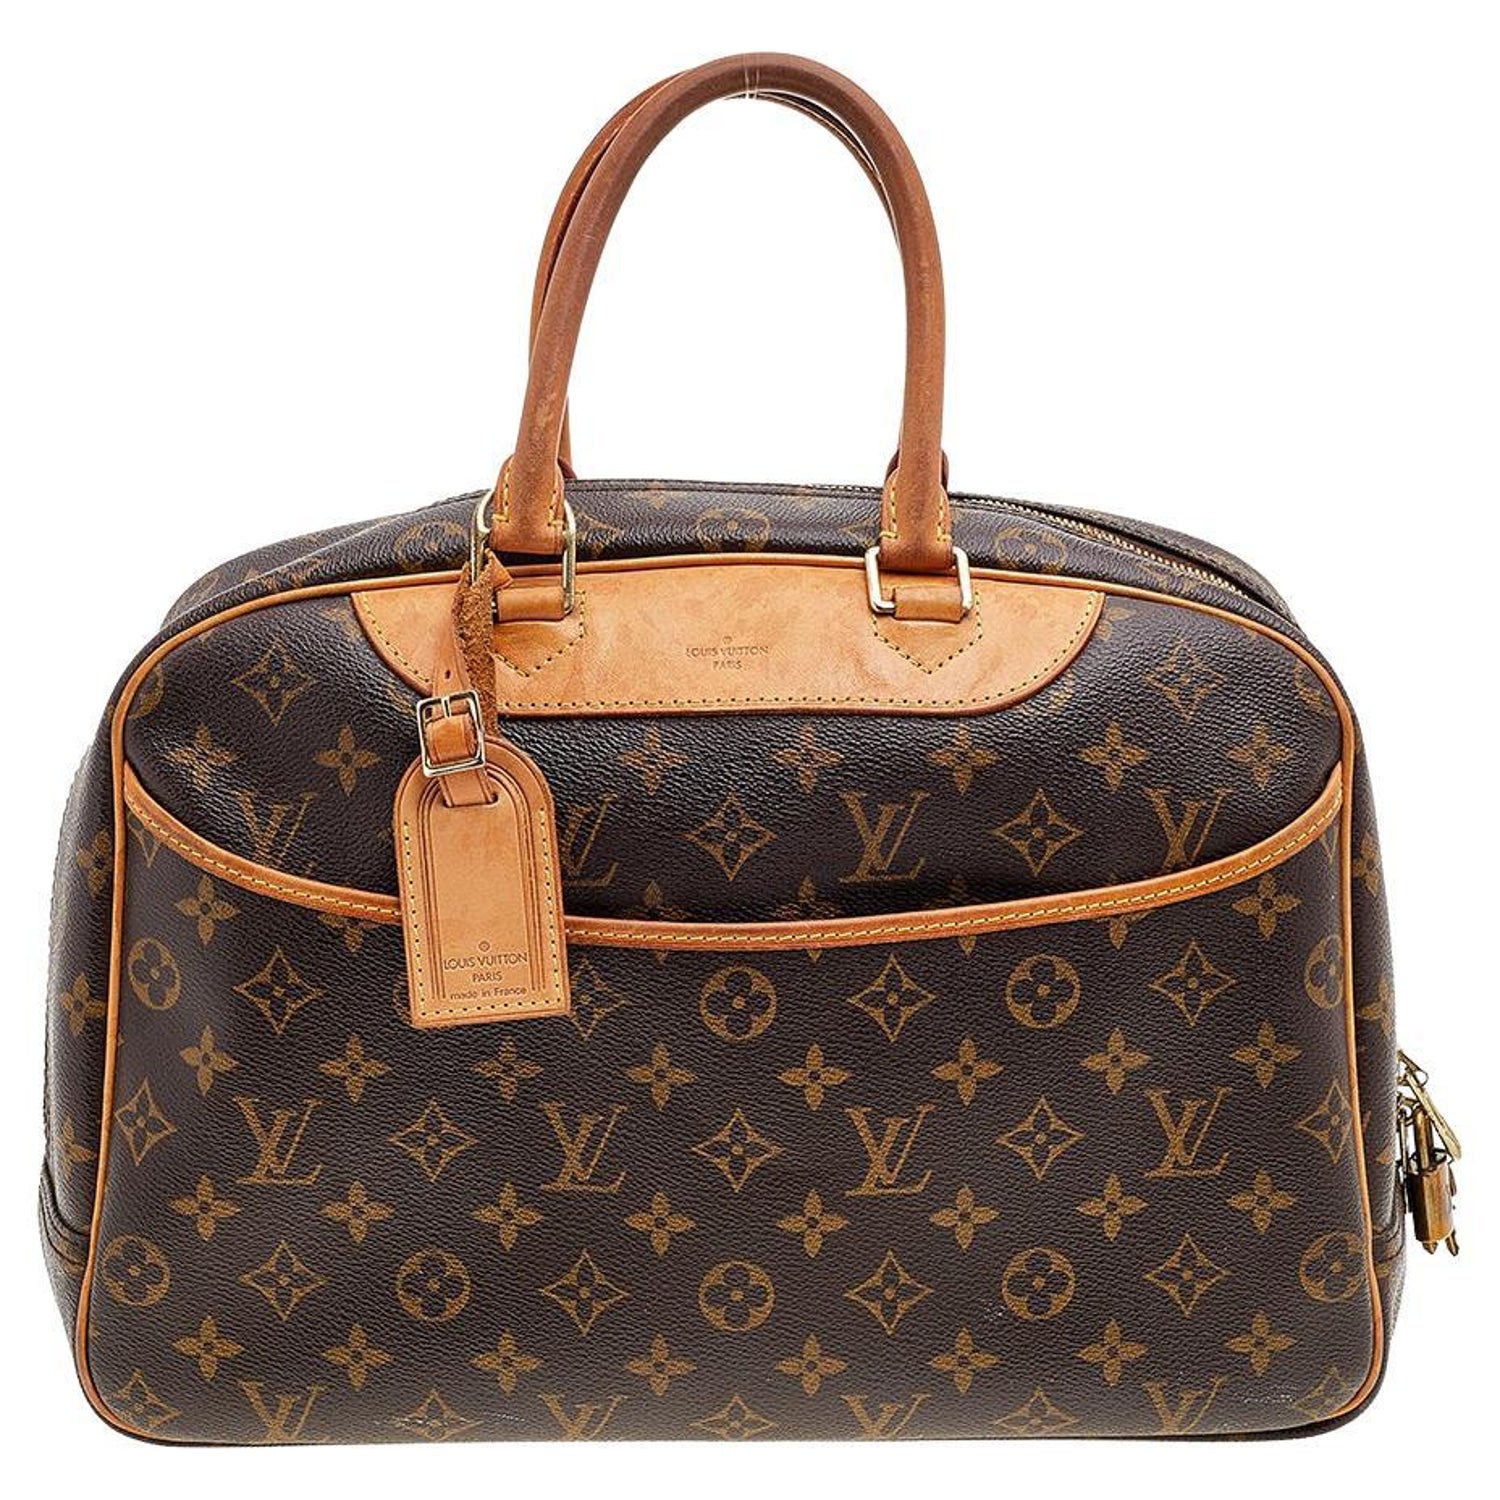 Louis Vuitton Jewellery Case: US$9,850.  Louis vuitton jewelry, Louis  vuitton trunk, Luxury jewelry box